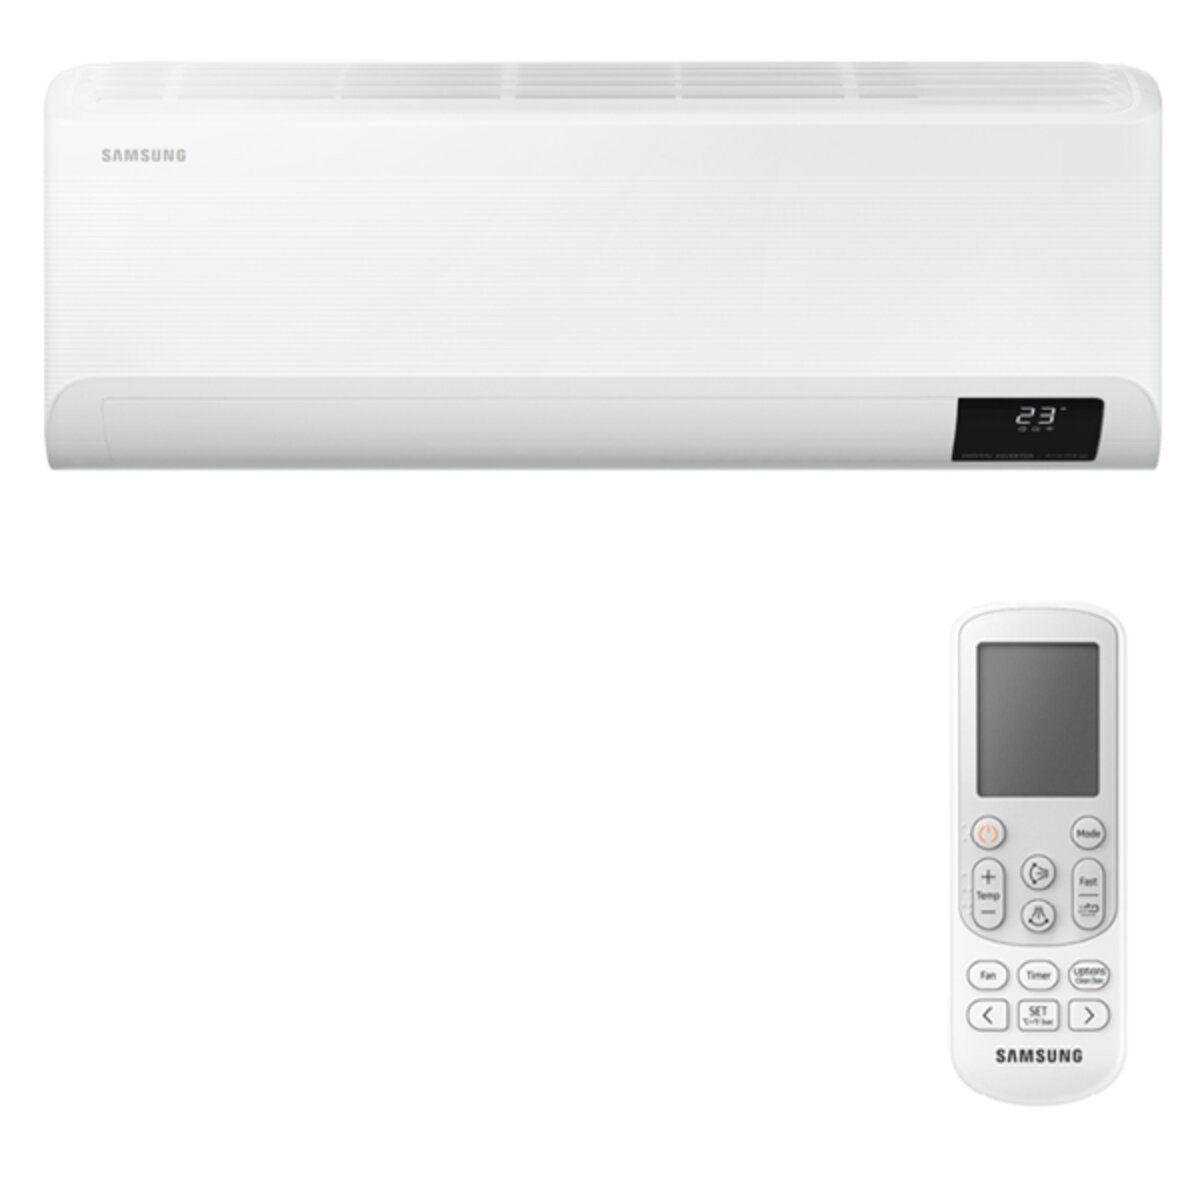 Samsung Cebu WLAN Klimaanlage Penta Split 9000 + 9000 + 12000 + 12000 + 12000 BTU Wechselrichter A++ WLAN Außengerät 10,0 kW